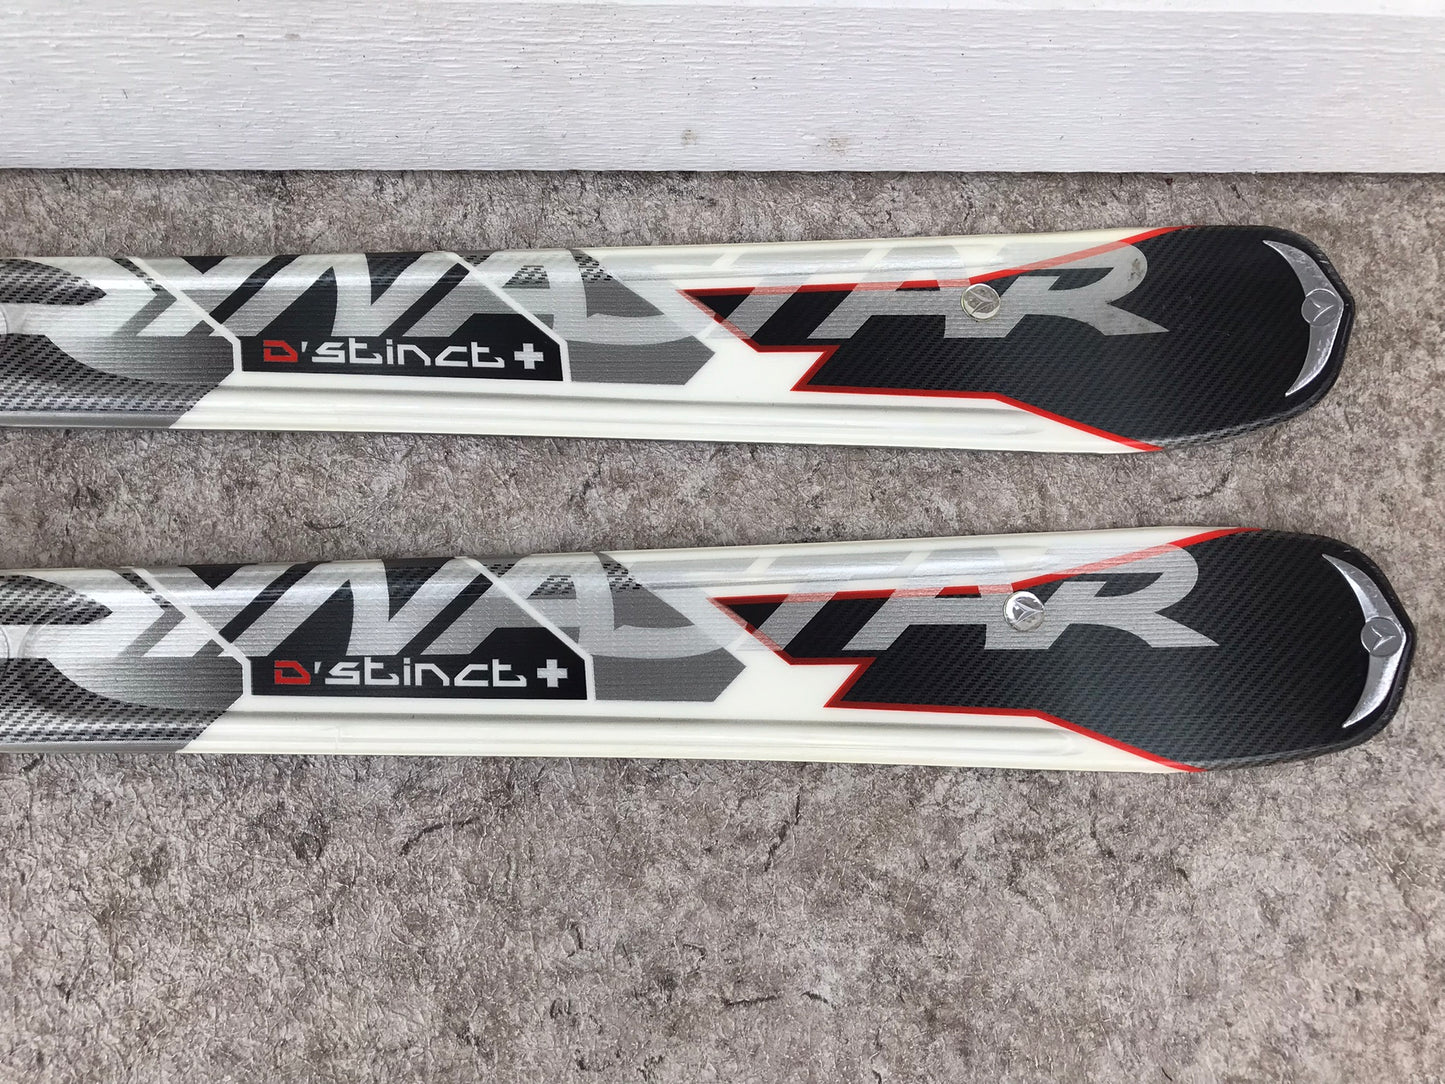 Ski 172 Dynastar Grey Whit Orange Parabolic With Bindings Like New Used Once